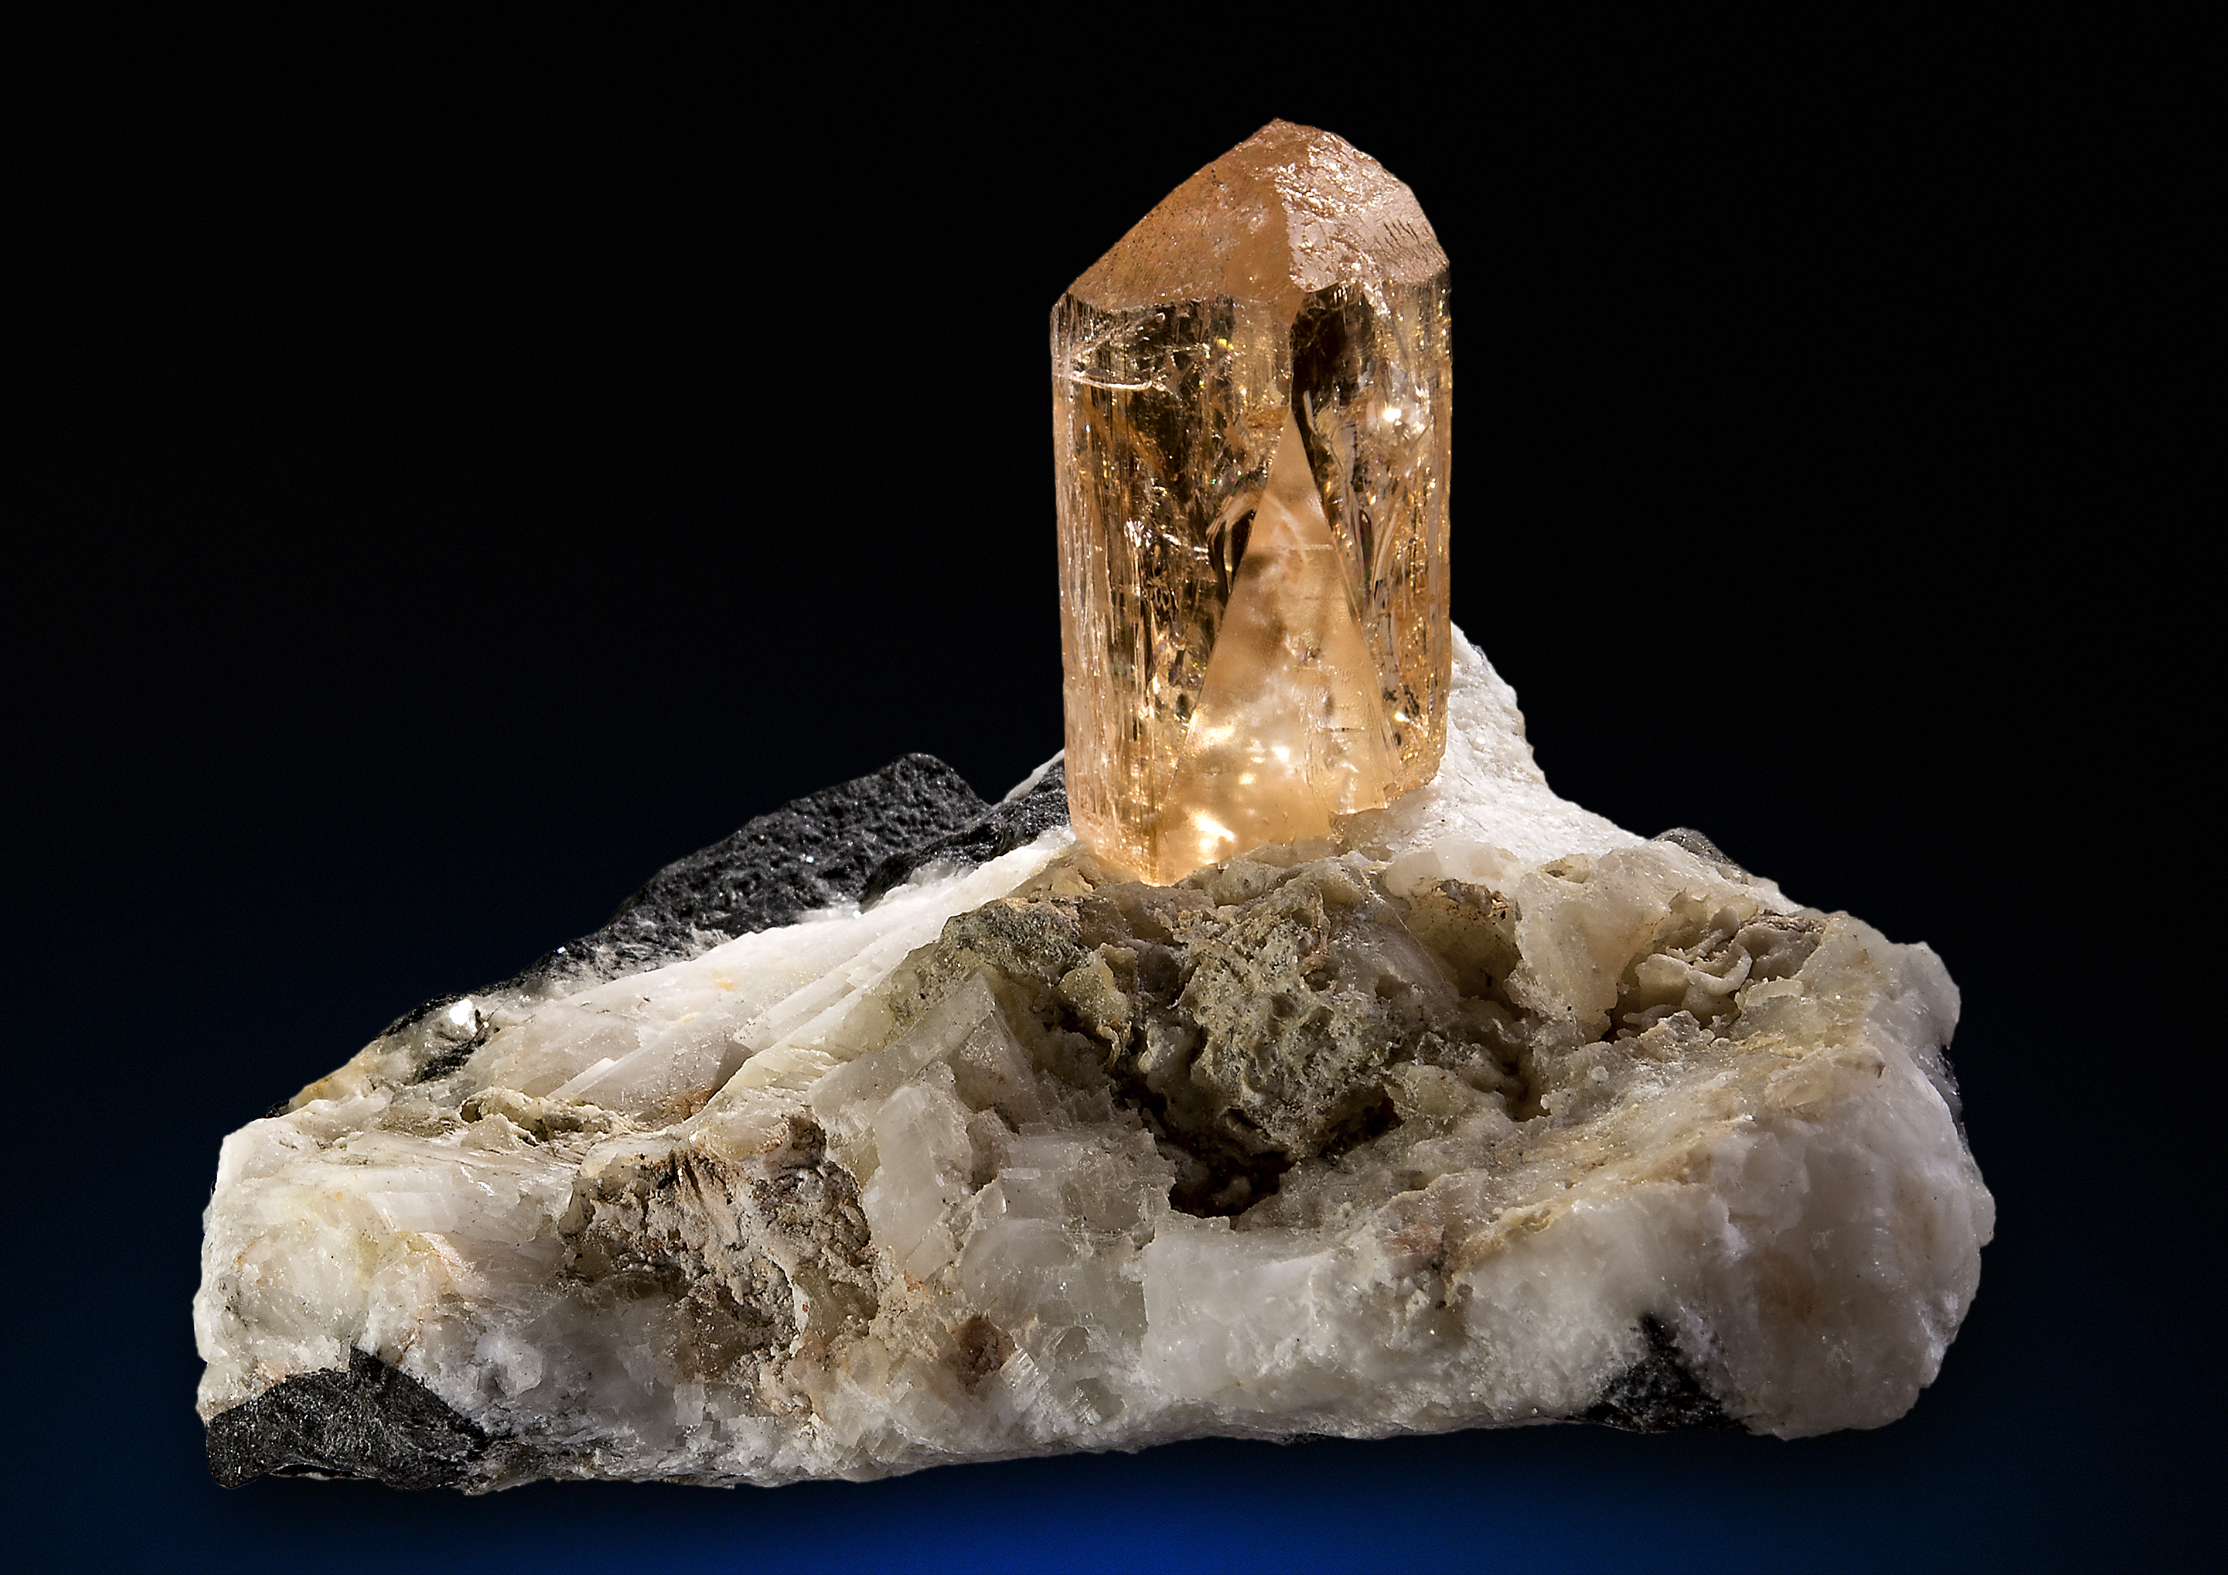 Saphira Minerals - ShowSearchResult